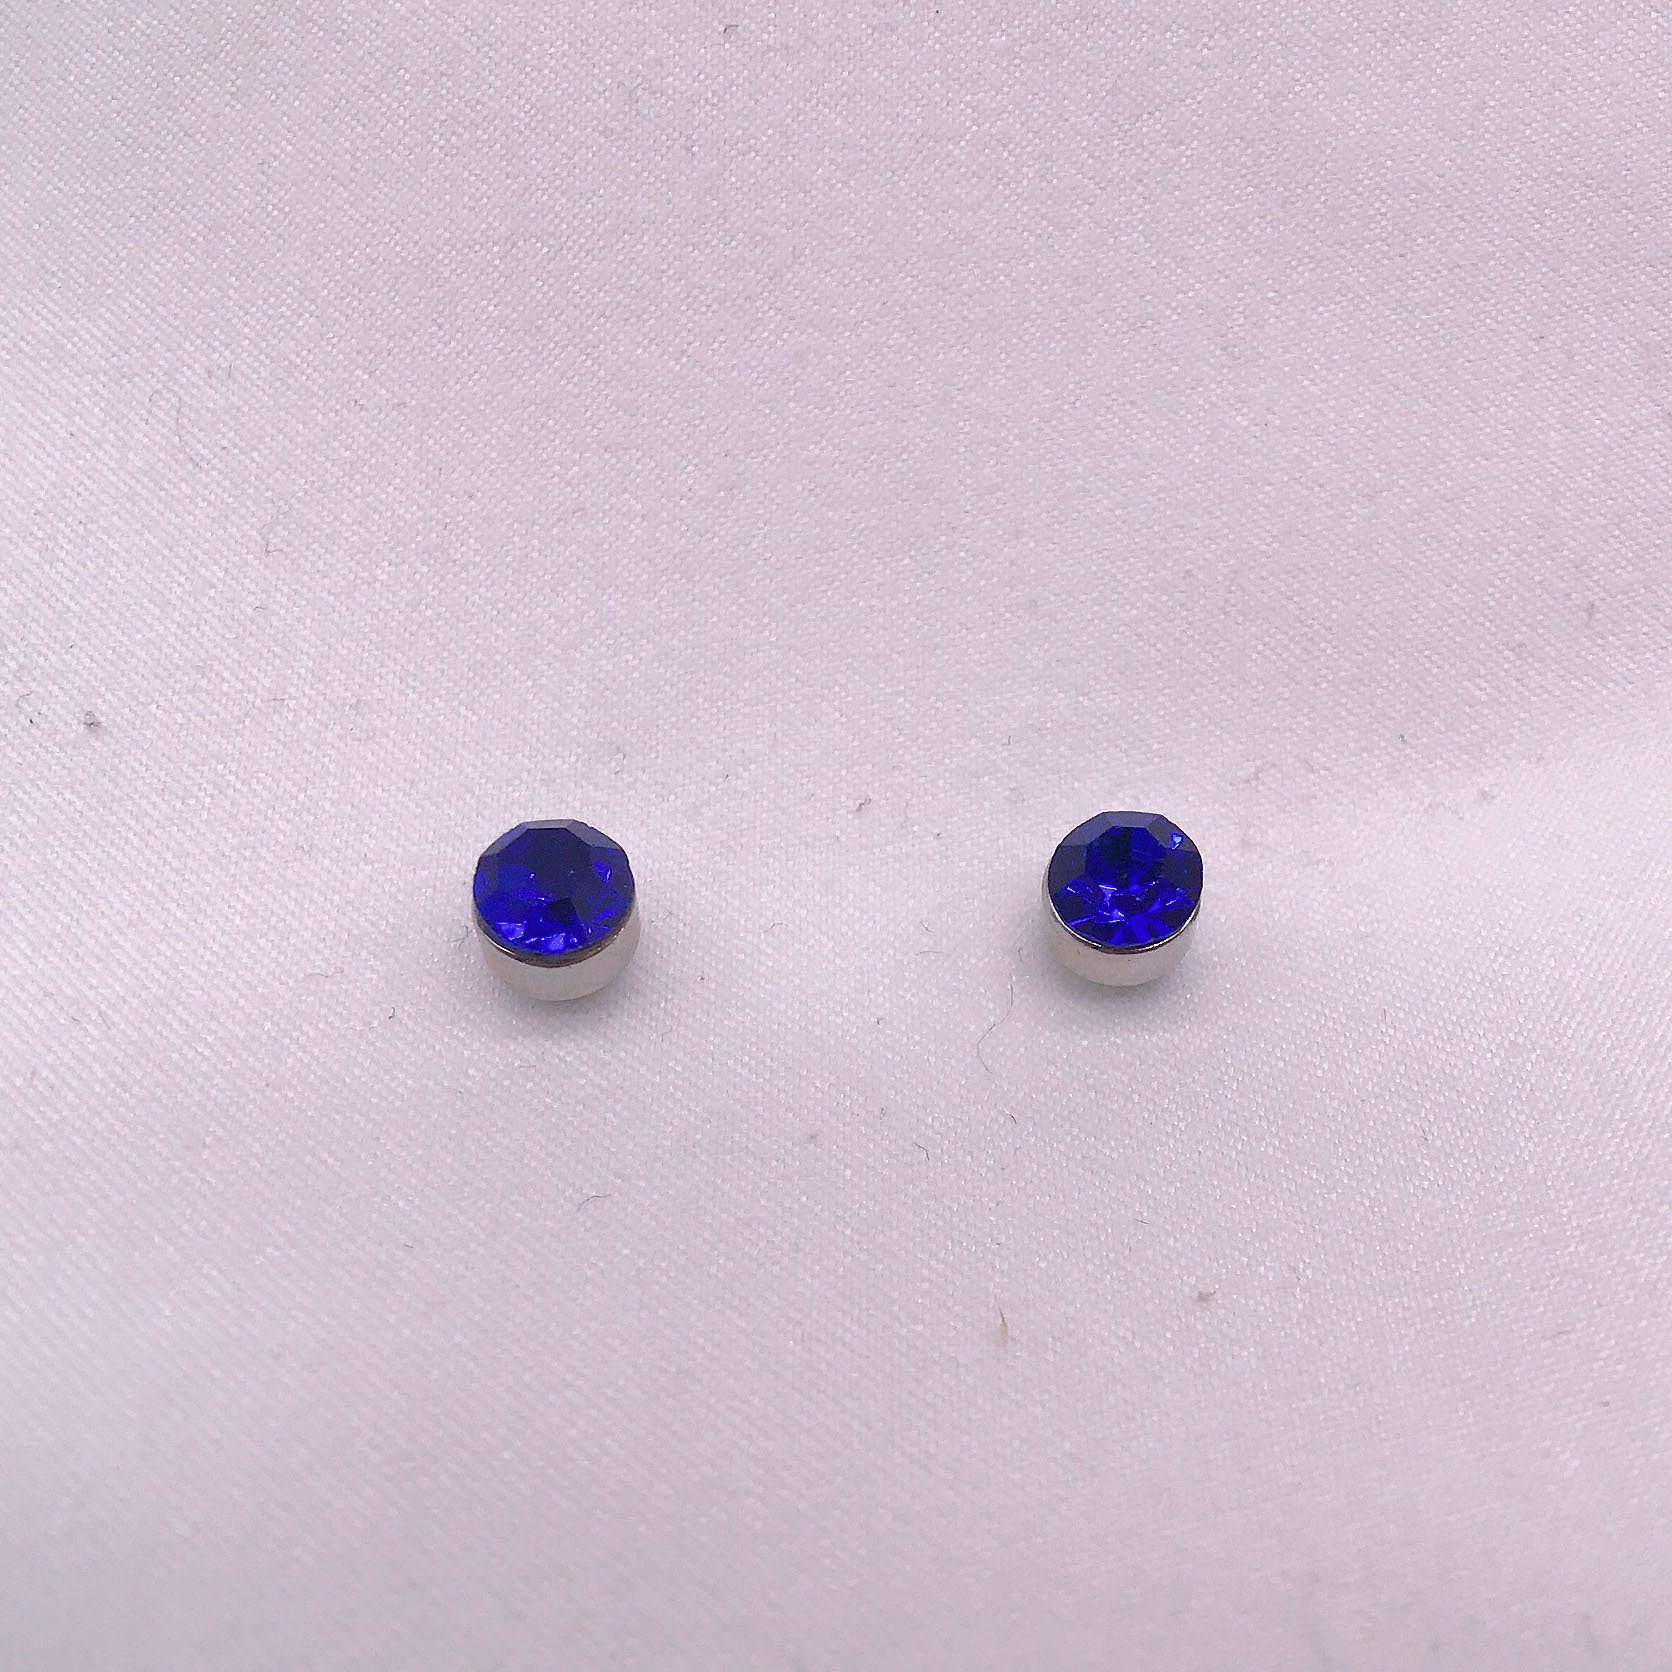 Les boucles d'oreilles en cristal double rondes en diamant ne nécessitent pas de trous d'oreille, boucles d'oreilles magnétiques